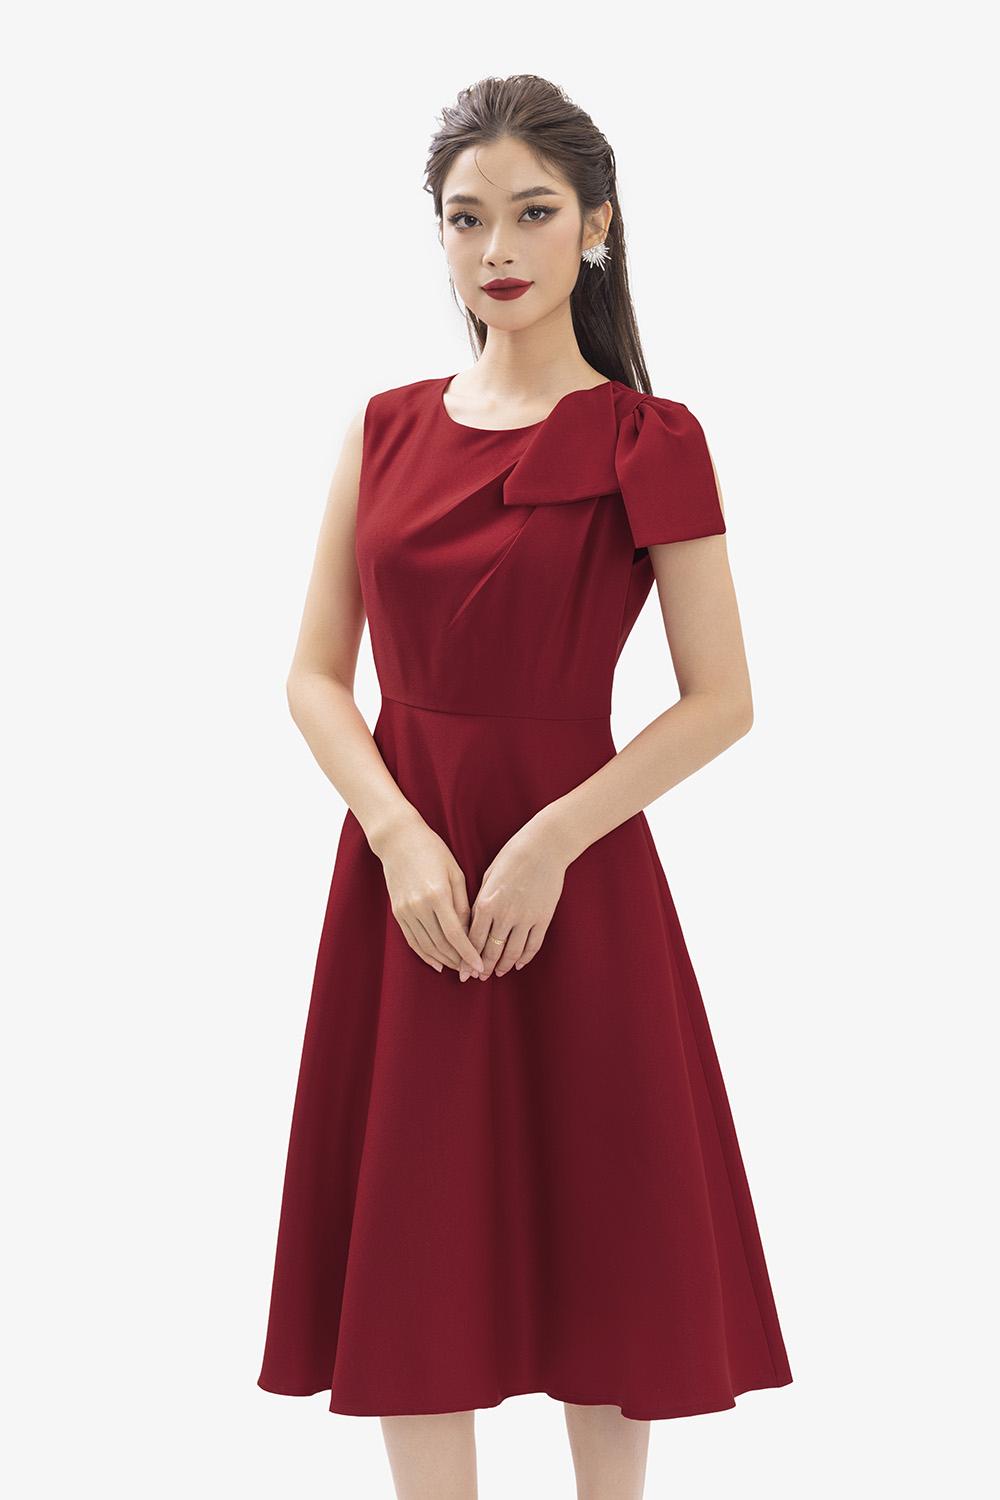 Chân váy đỏ mặc với áo gì để trở nên sang trọng và quyến rũ?